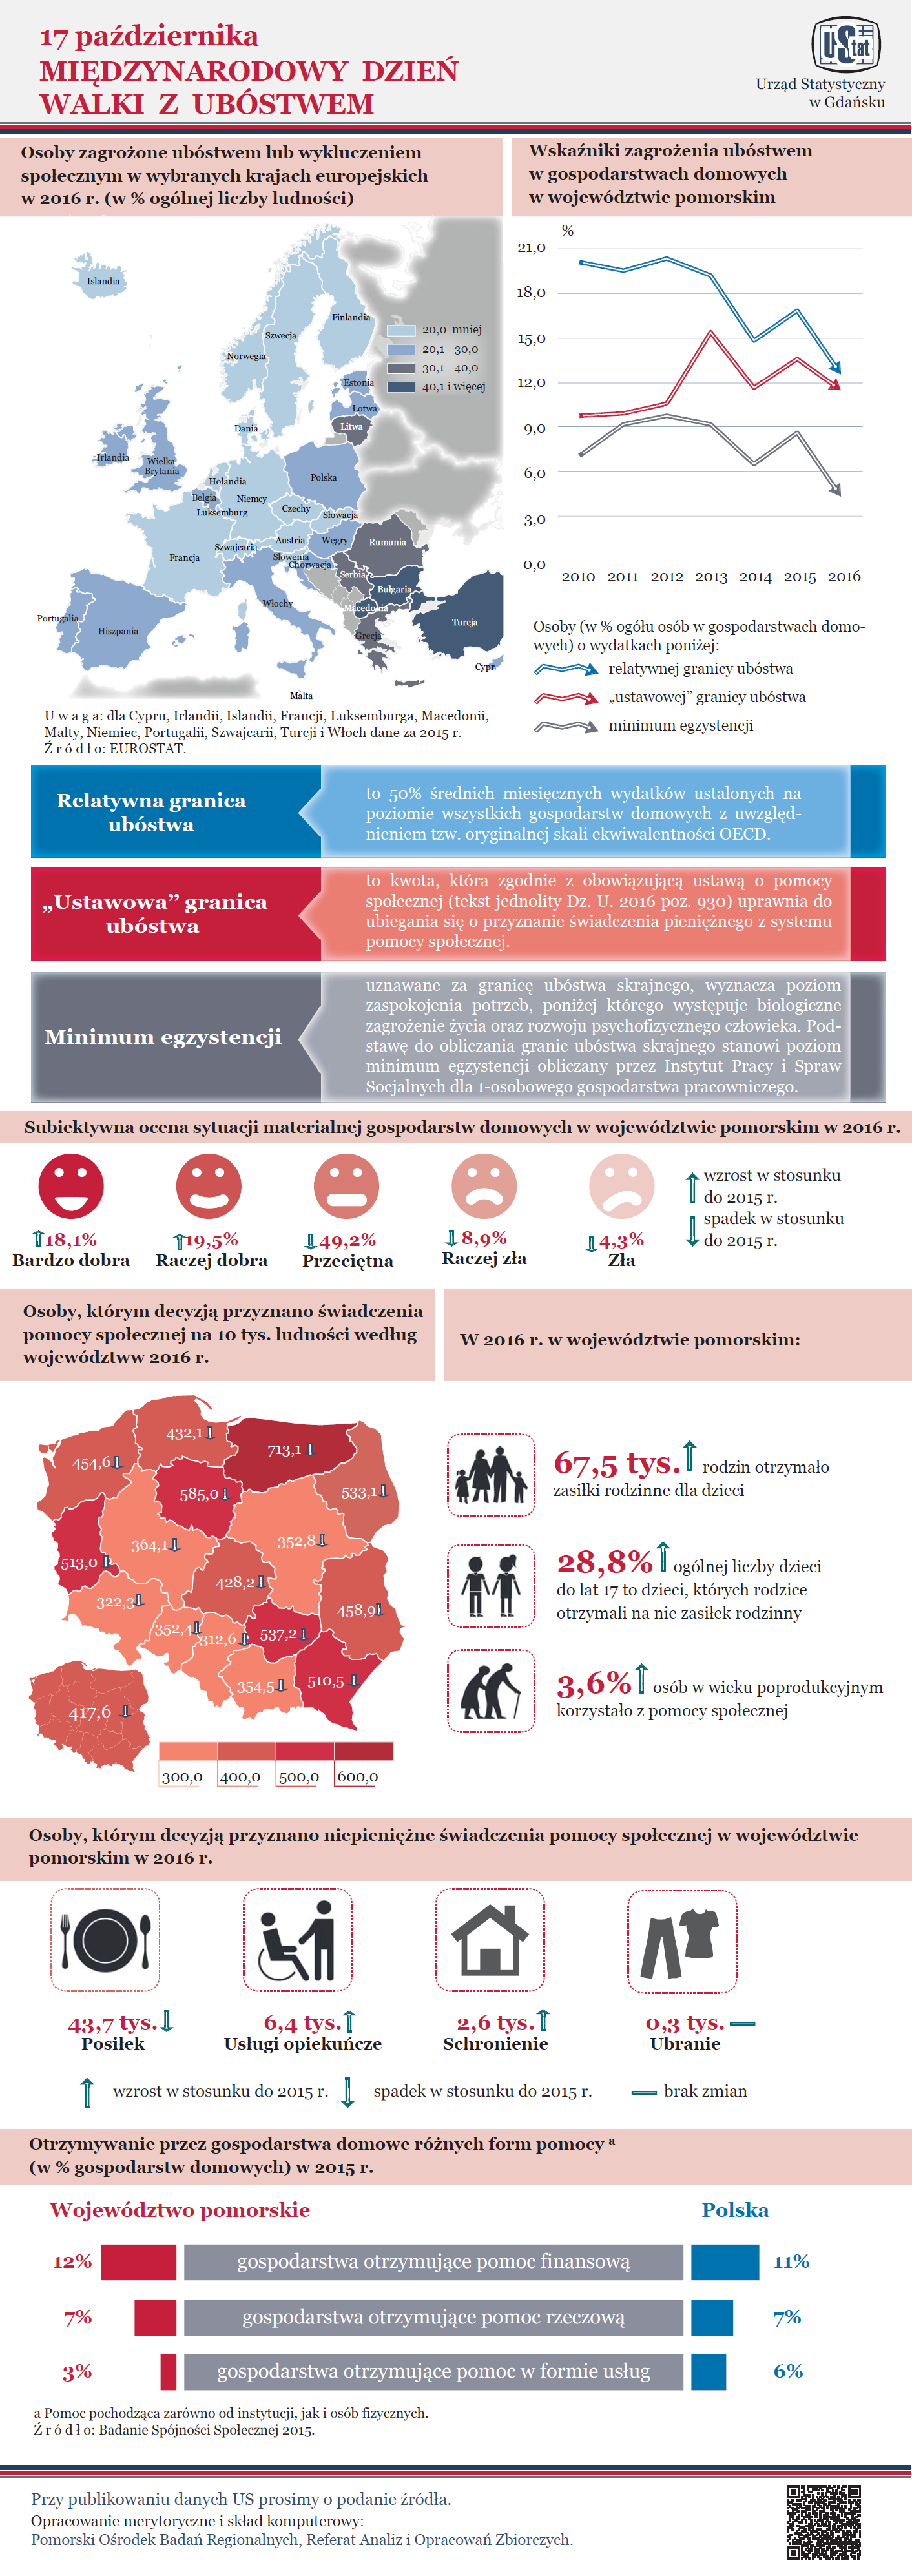 17 października - Międzynarodowy Dzień Walki z Ubóstwem - infografika